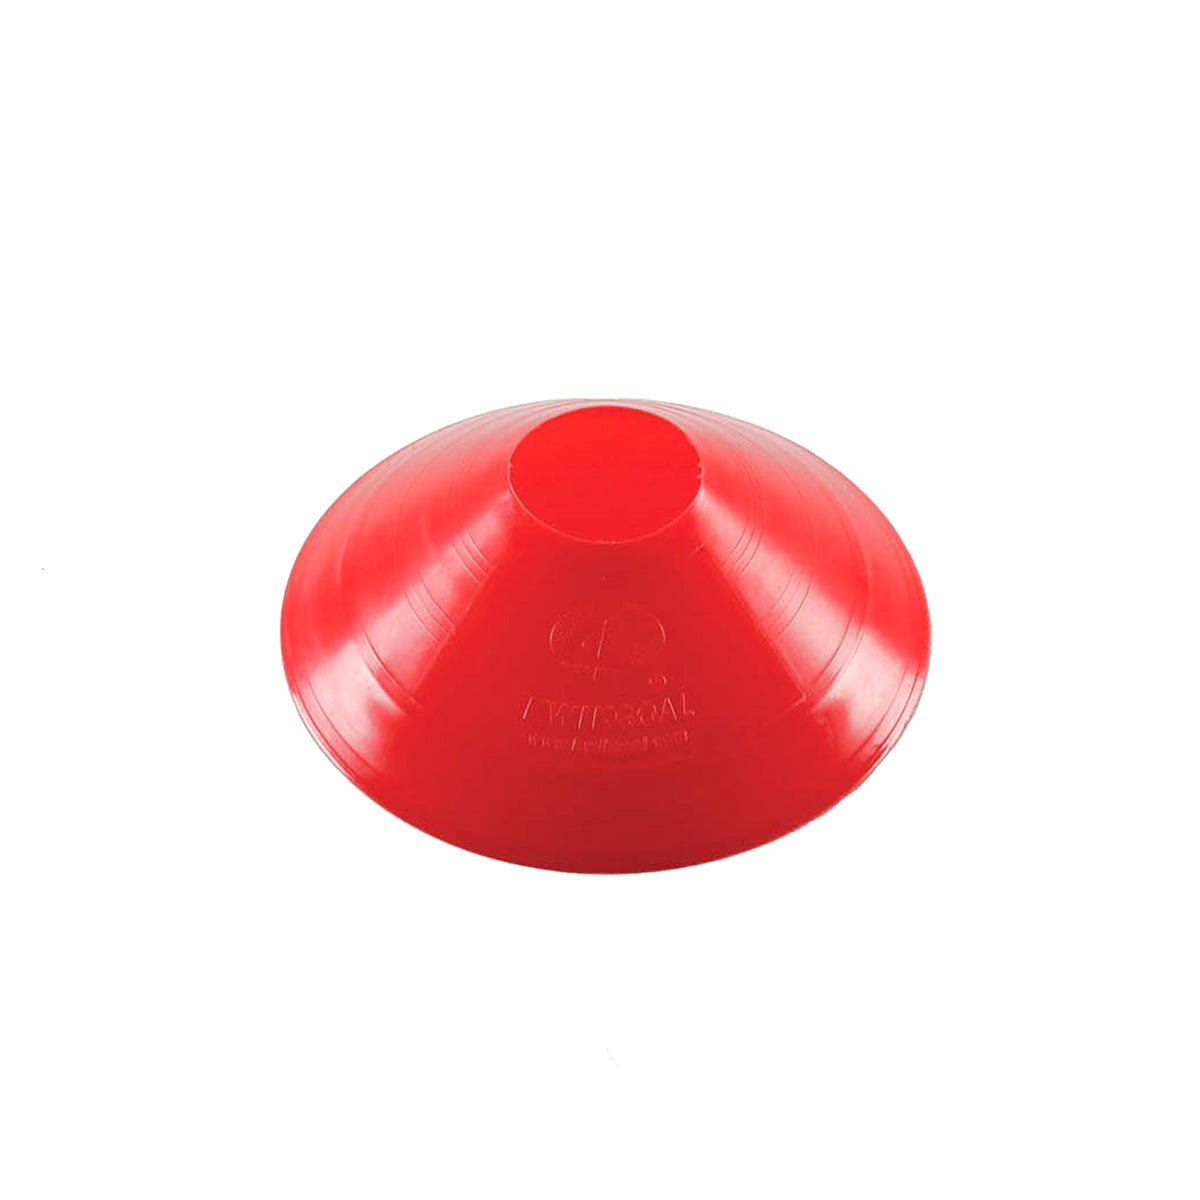 Kwikgoal Small Disc Cones Soccer Coaching Equipment | 6A10 Field equipment Kwikgoal Red 